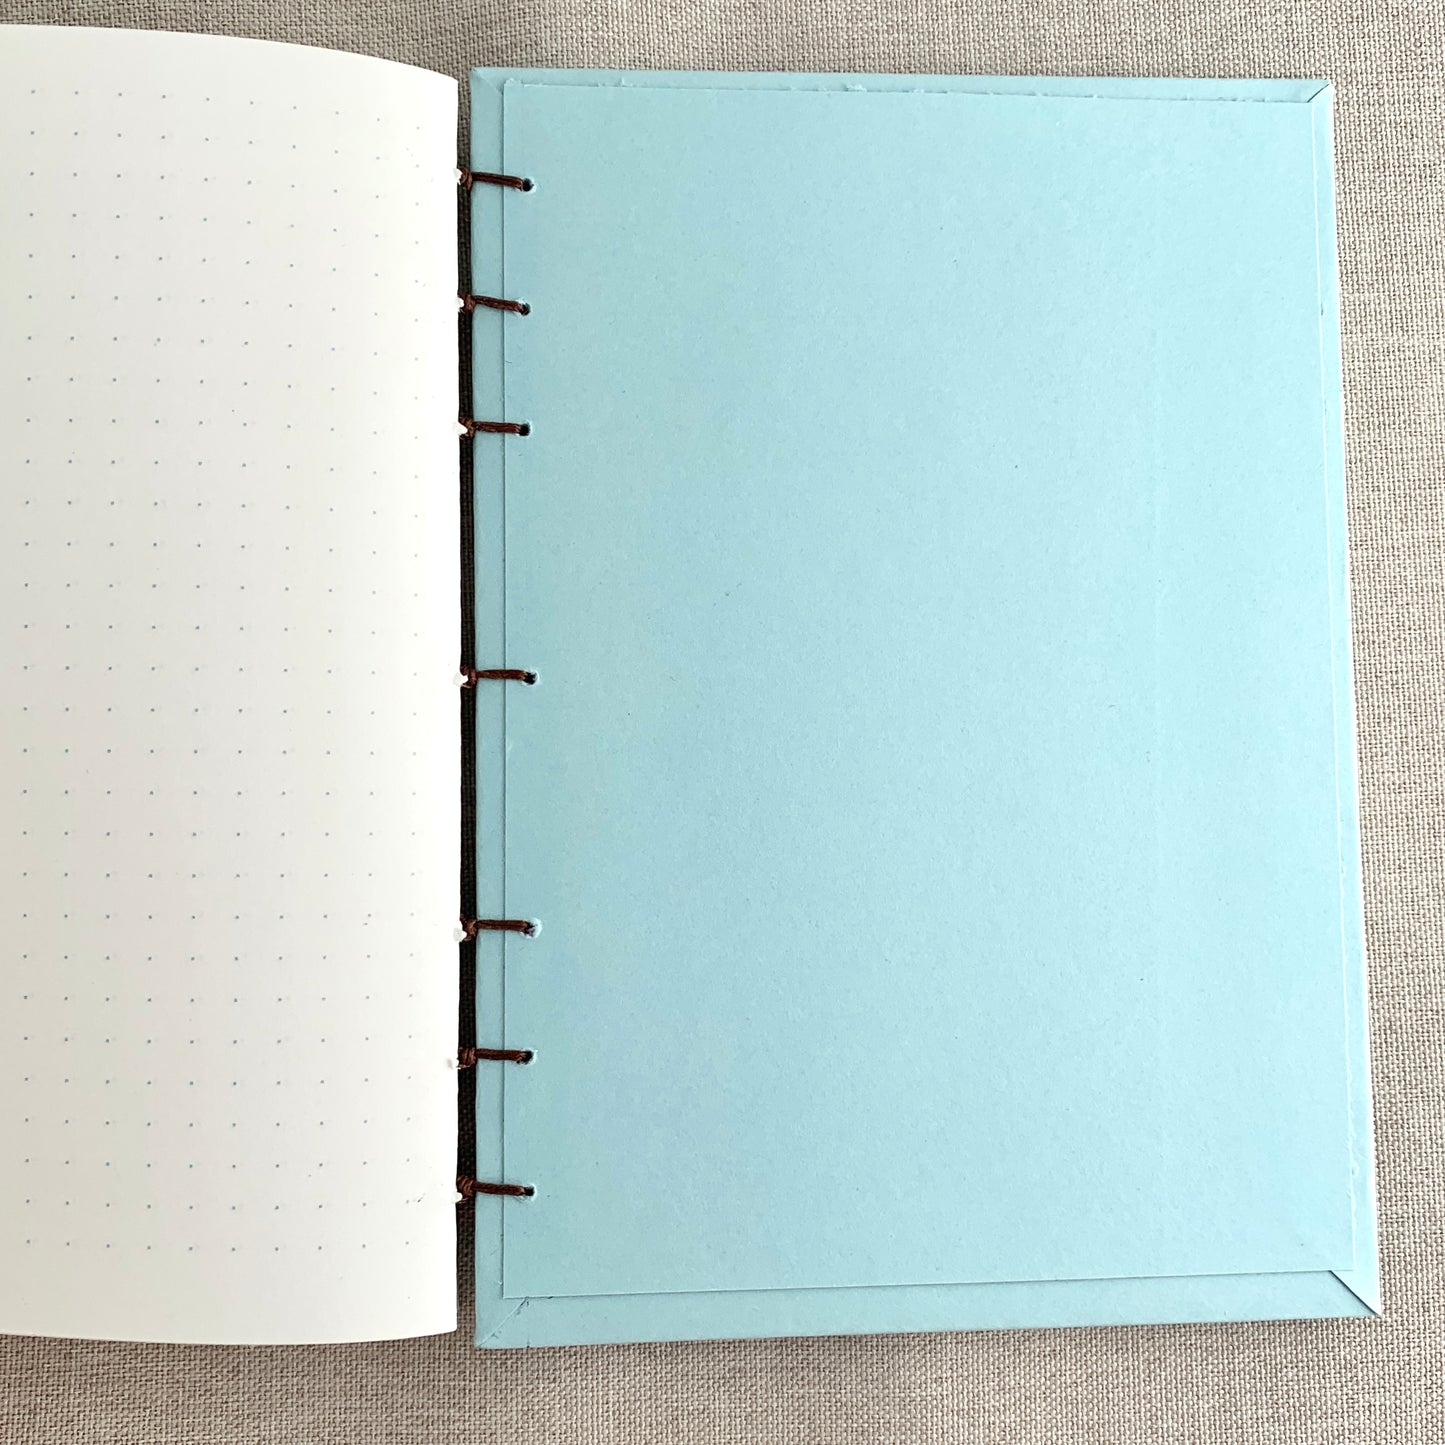 Water Blue Flowers - A6 - Dot Grid - Coptic Bound - Fountain Pen Notebook - Handmade Journal